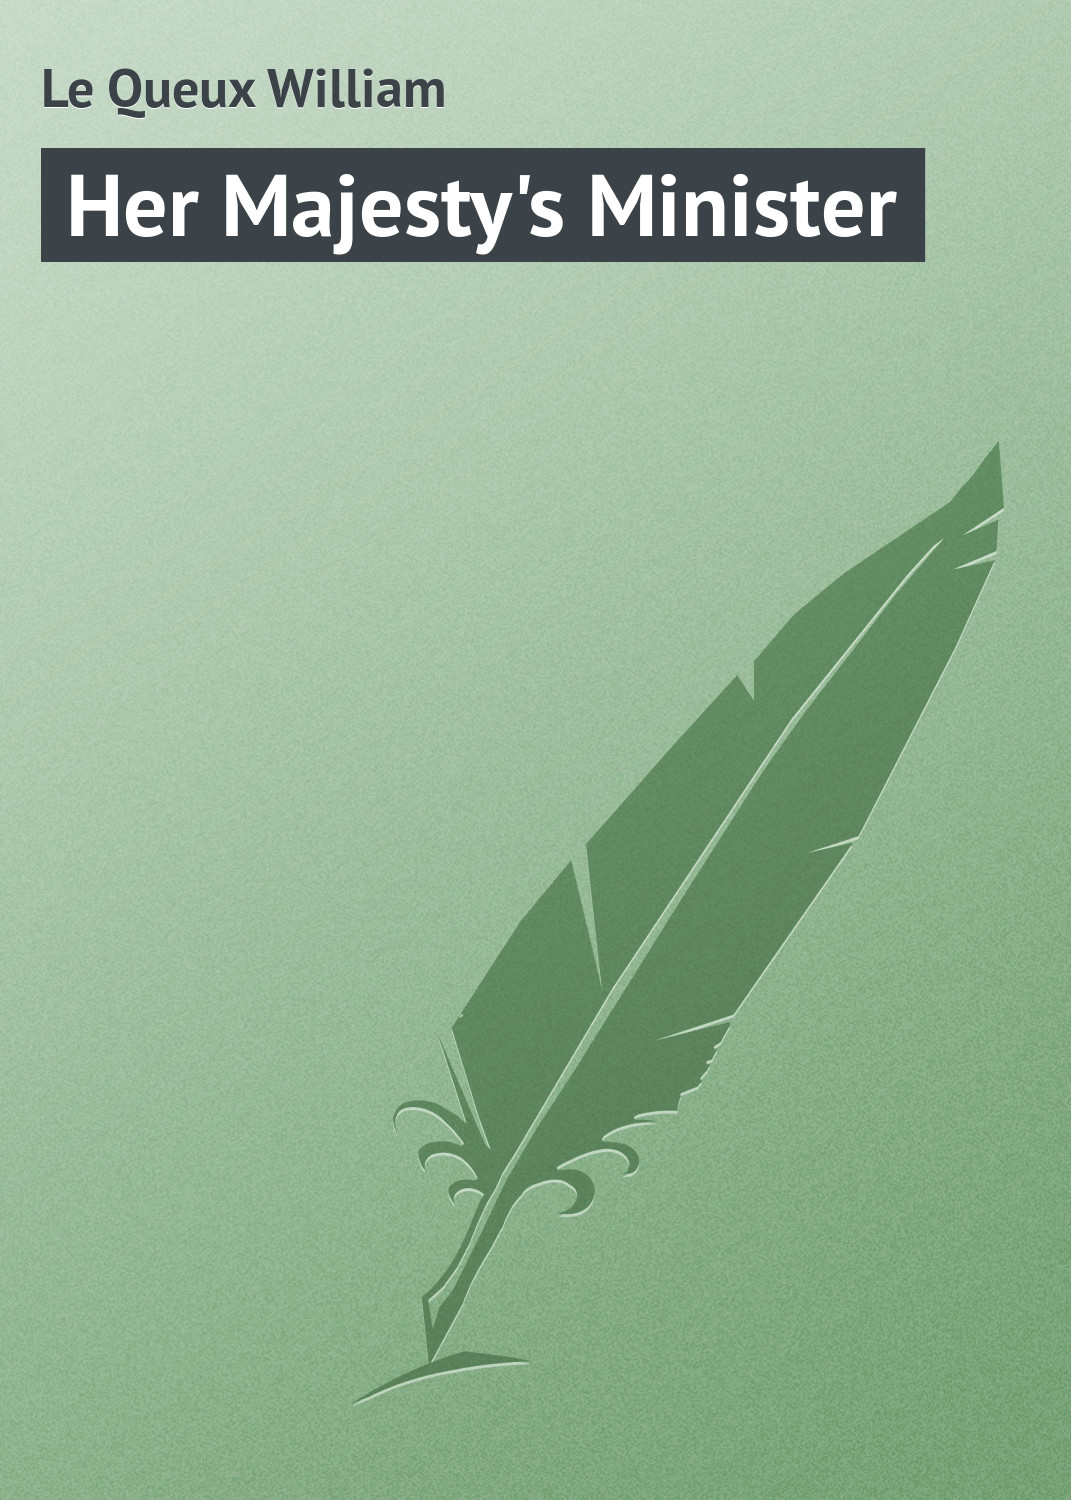 Книга Her Majesty's Minister из серии , созданная William Le Queux, может относится к жанру Зарубежная классика. Стоимость электронной книги Her Majesty's Minister с идентификатором 23155059 составляет 5.99 руб.